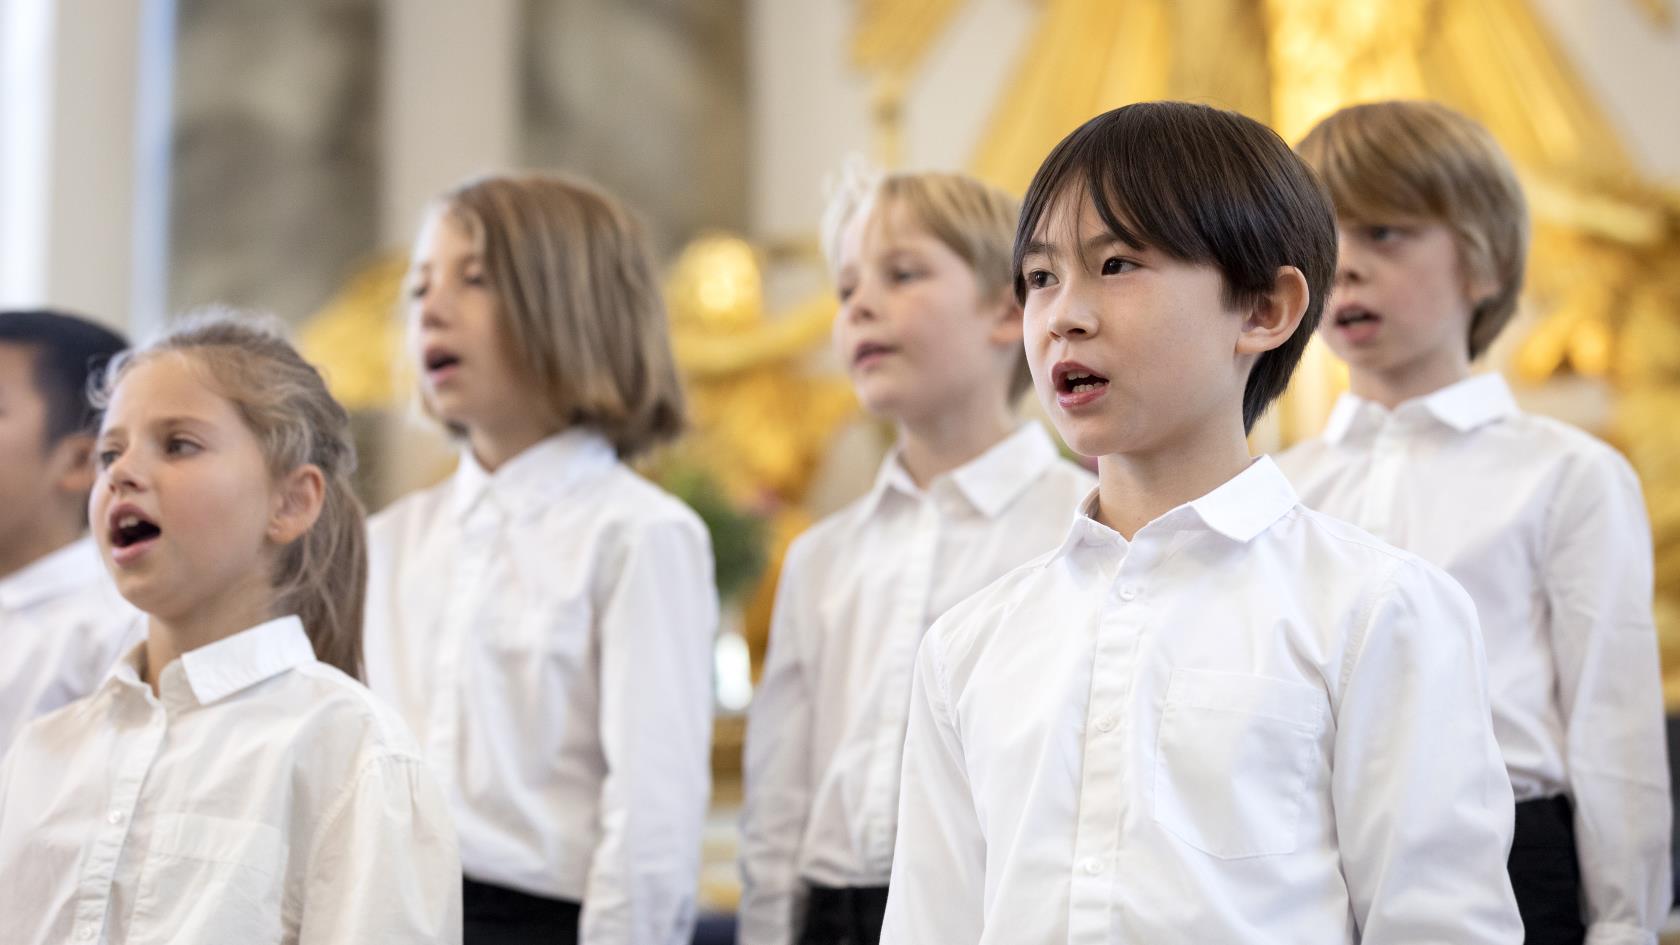 Medlemmar i en barnkör står och sjunger i en kyrka.